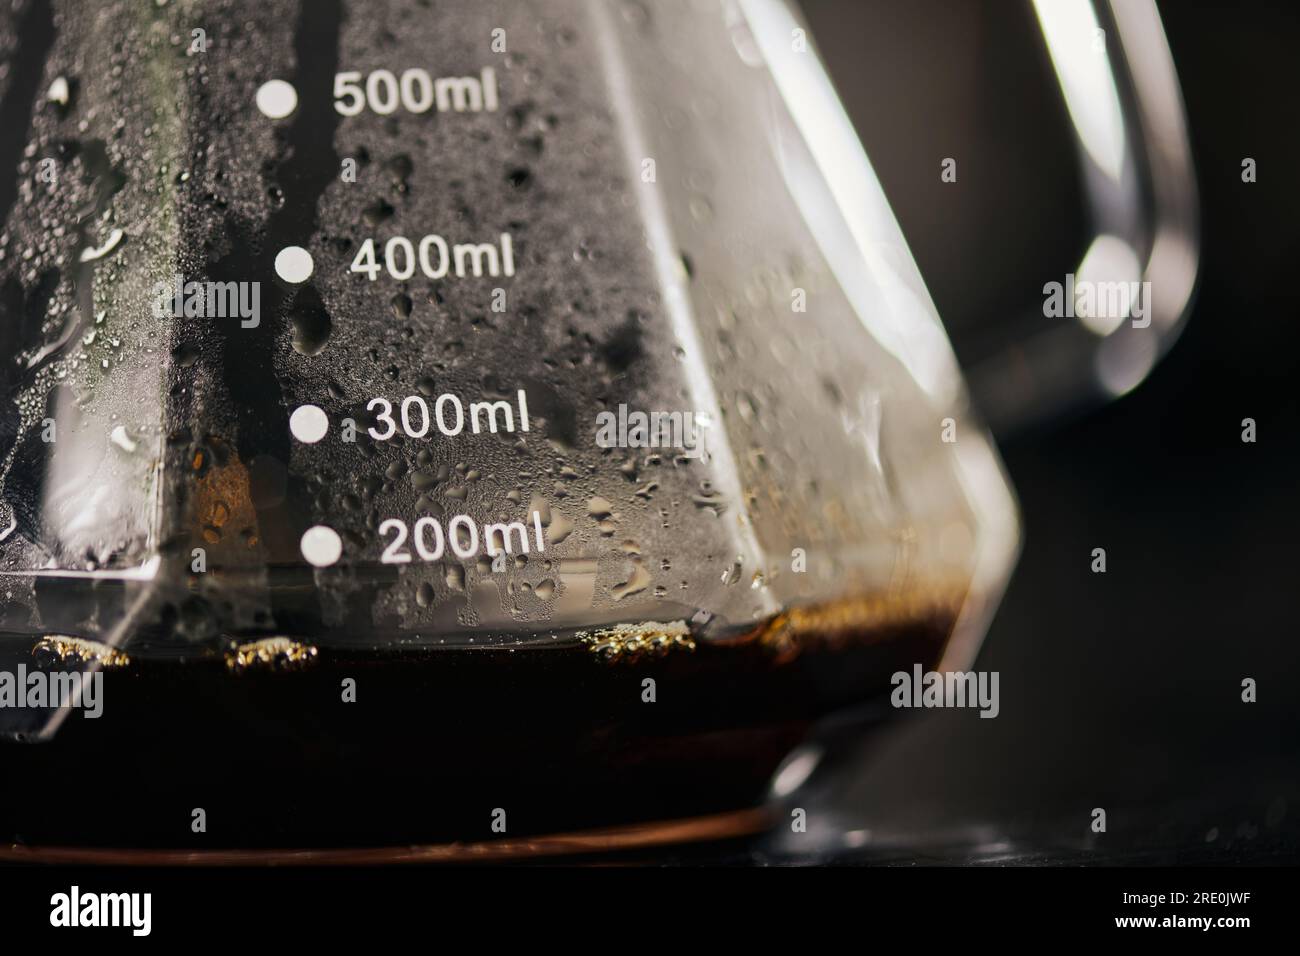 https://c8.alamy.com/compes/2re0jwf/vista-de-cerca-del-espresso-recien-hecho-negro-en-cafetera-de-cristal-con-escala-de-medicion-metodo-de-goteo-2re0jwf.jpg